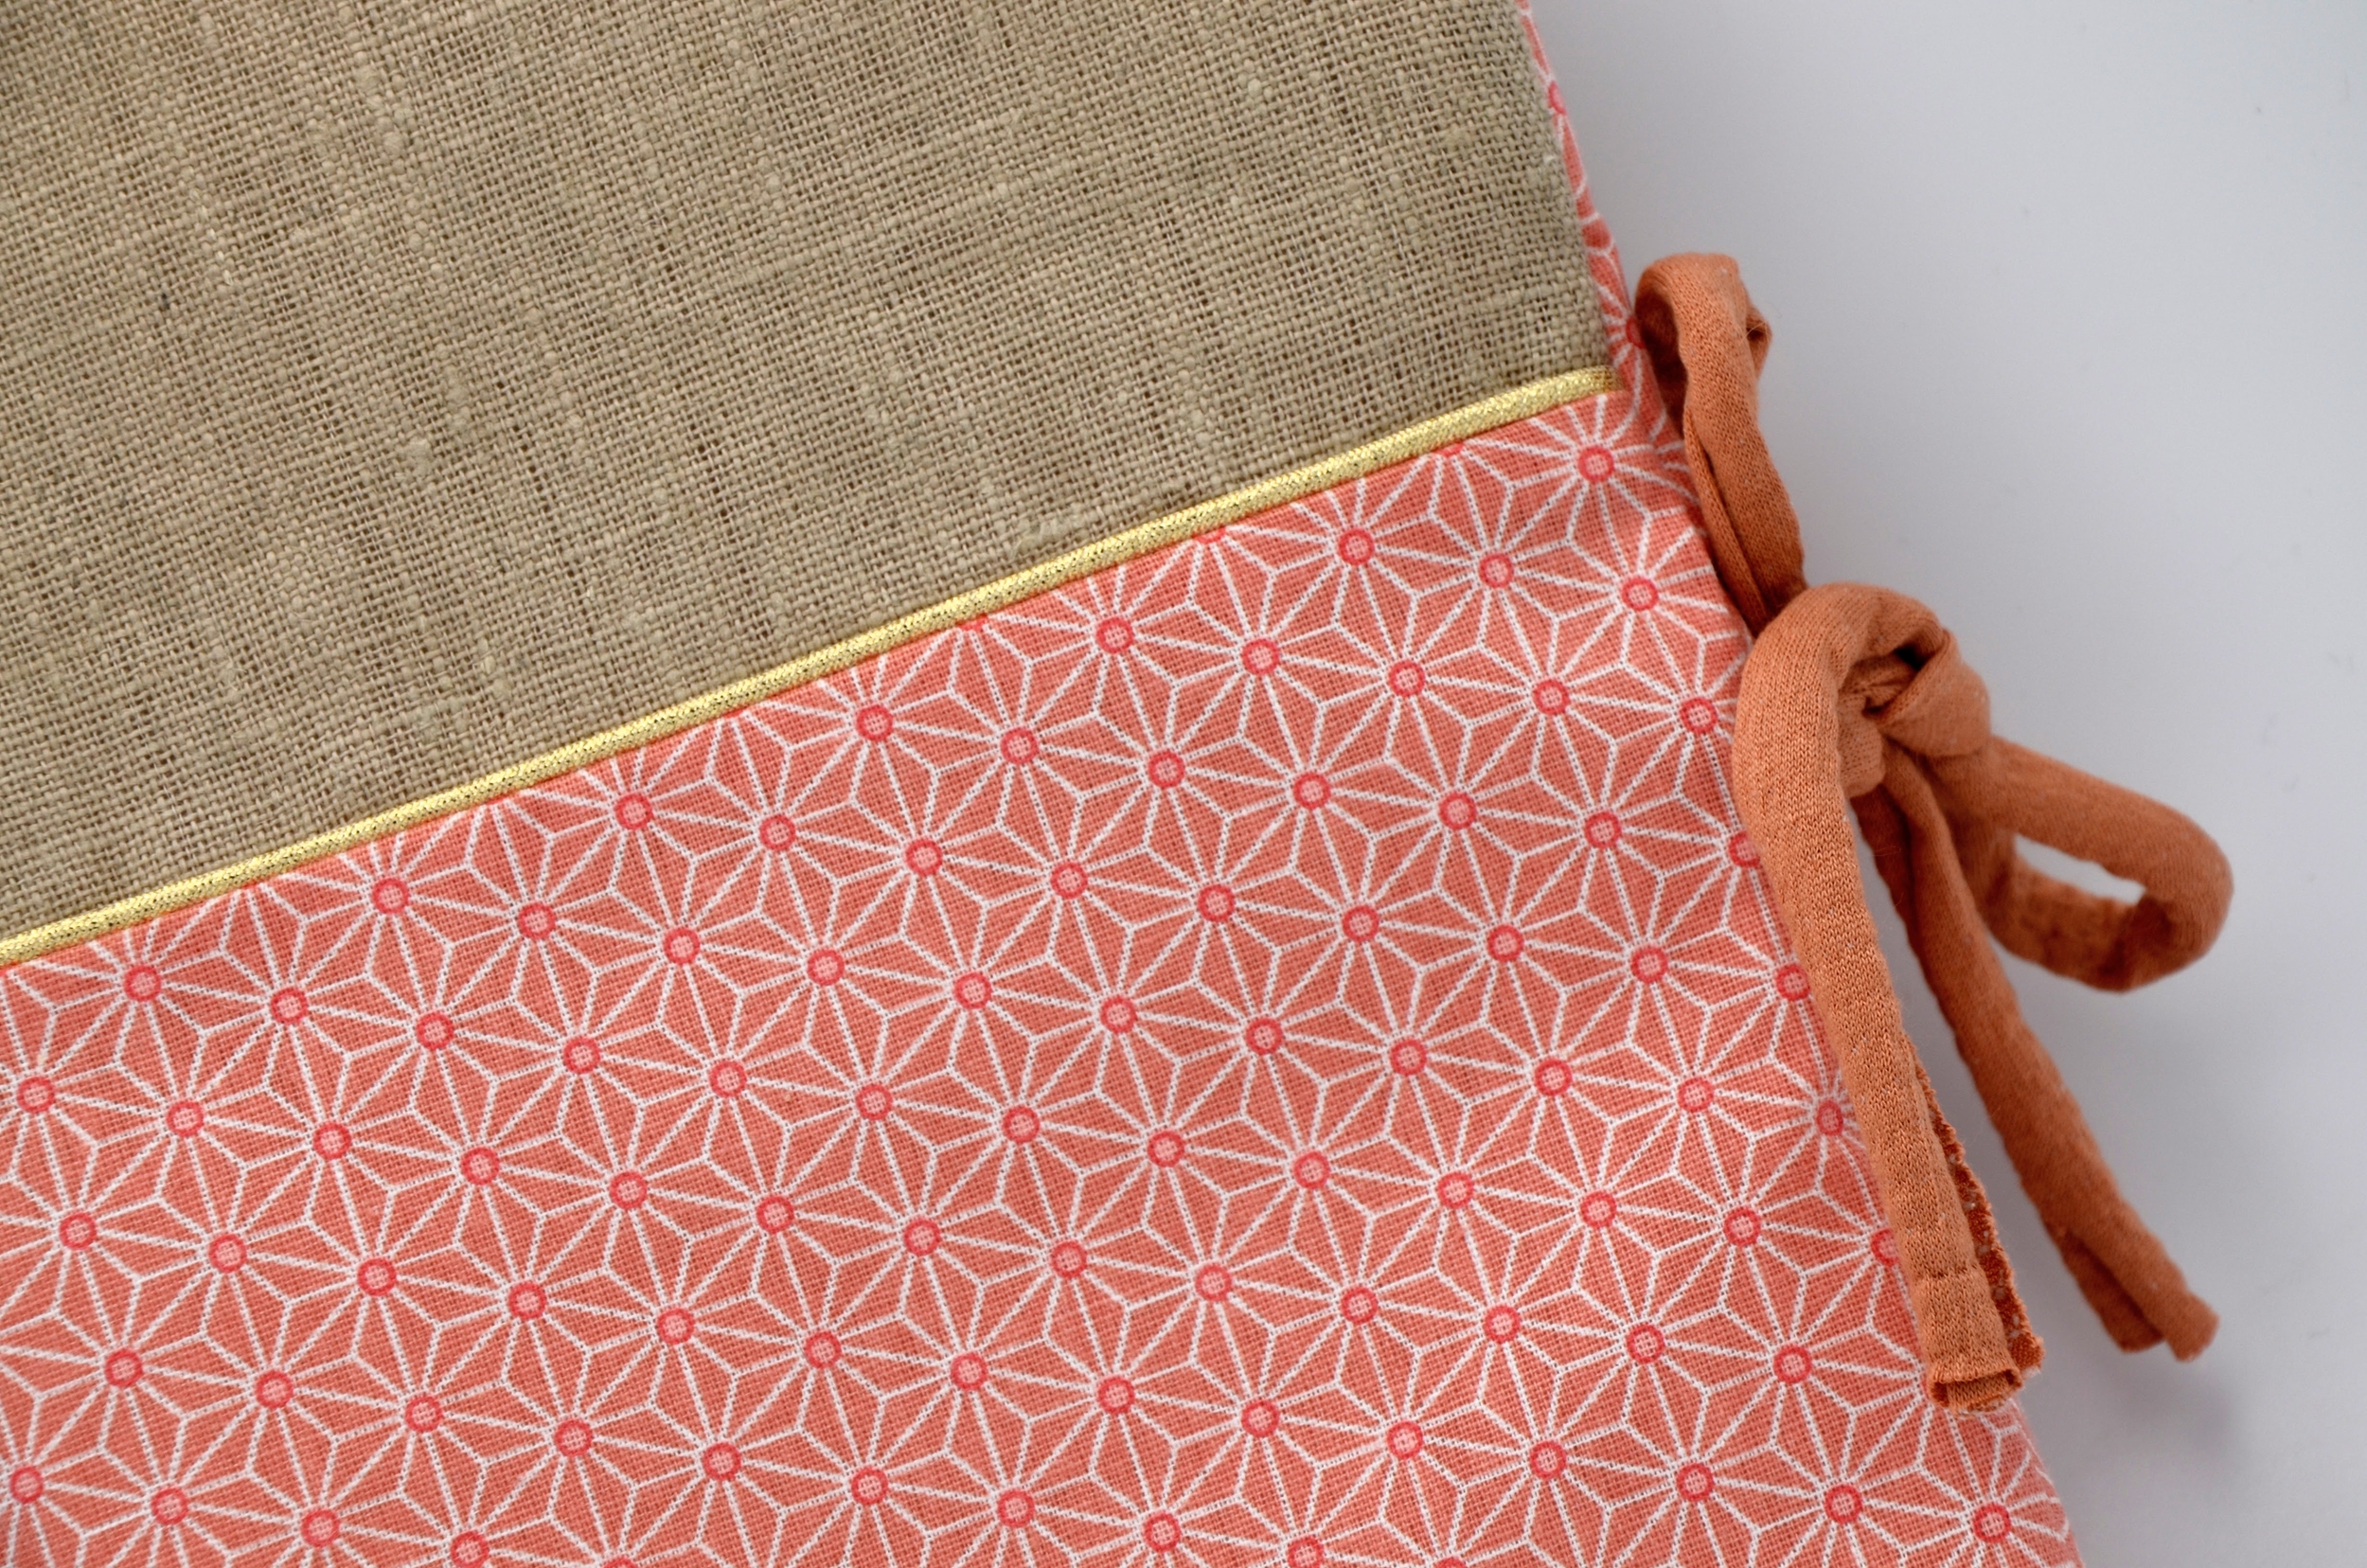 protege carnet santé bébé tissu coton lin naturel rose corail motifs japonisant (3)